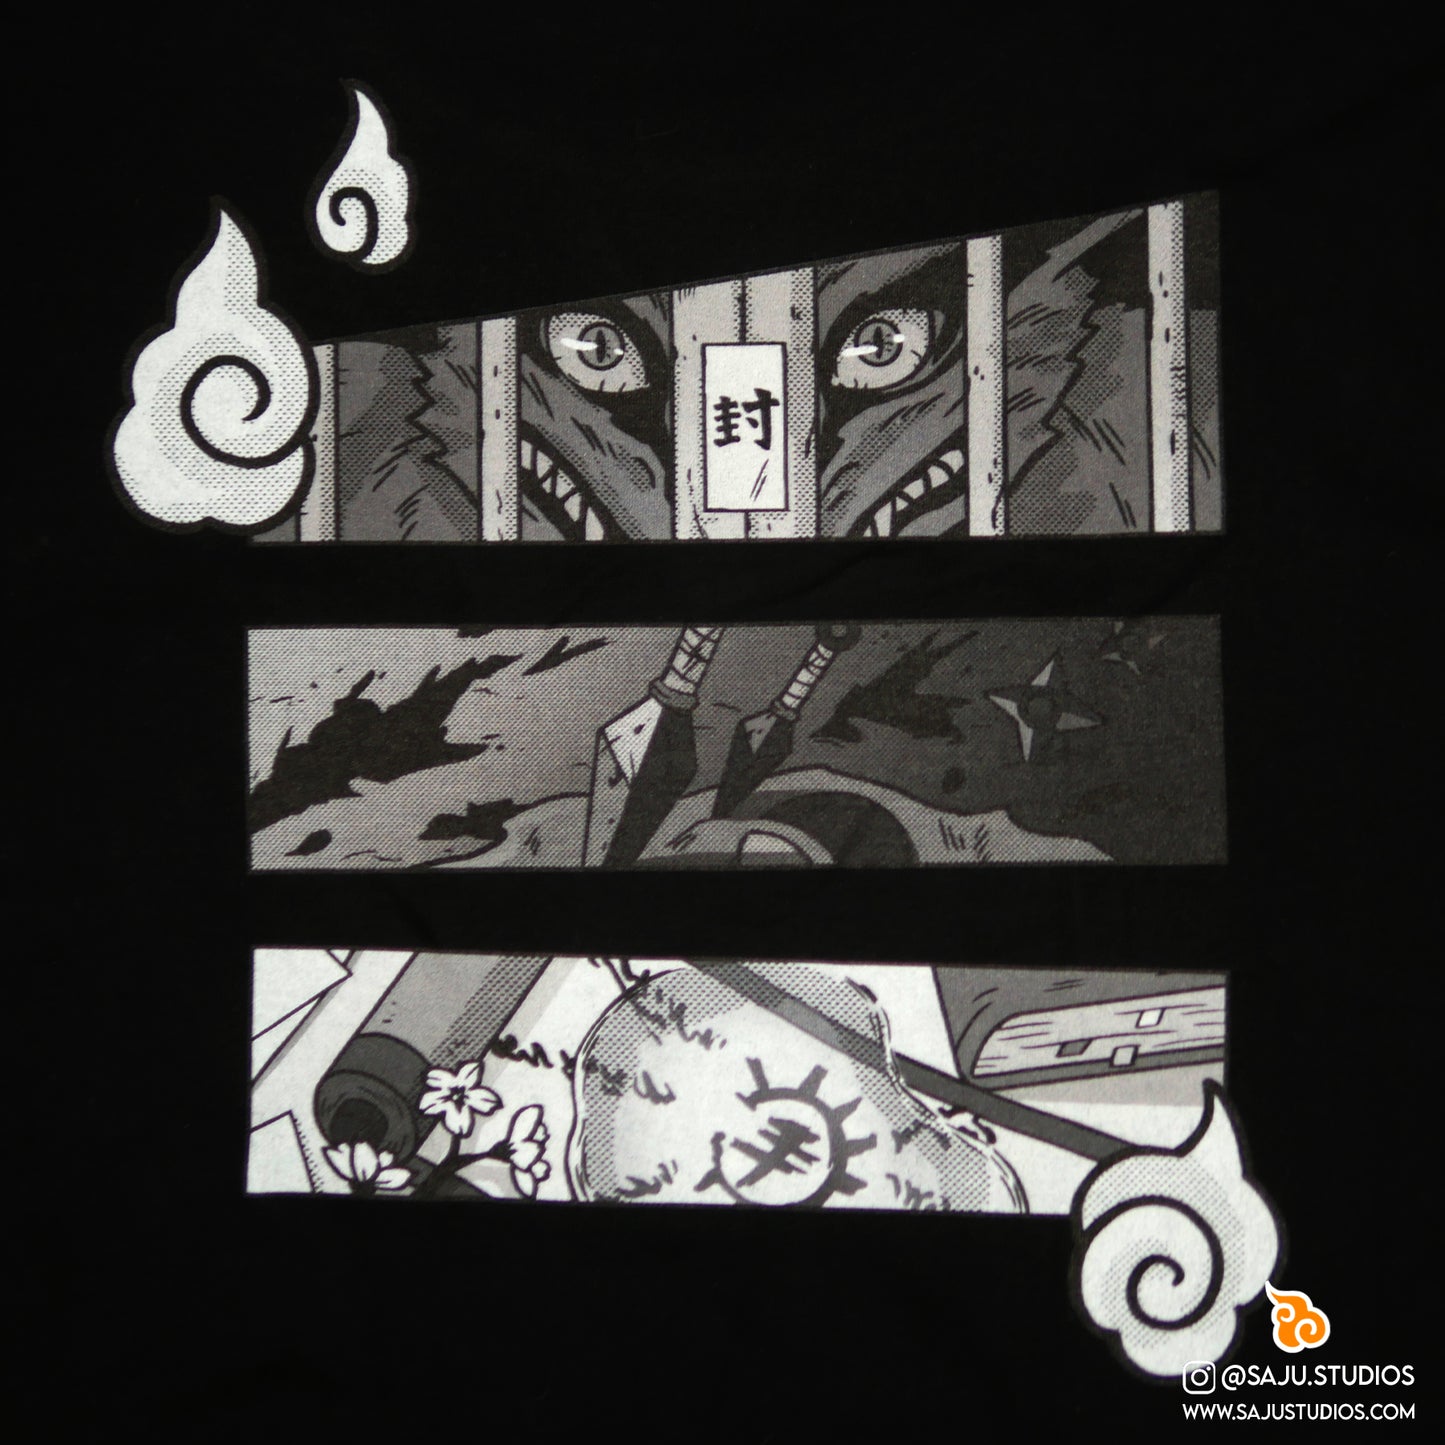 Embroidered Shinobi's Story Shirt